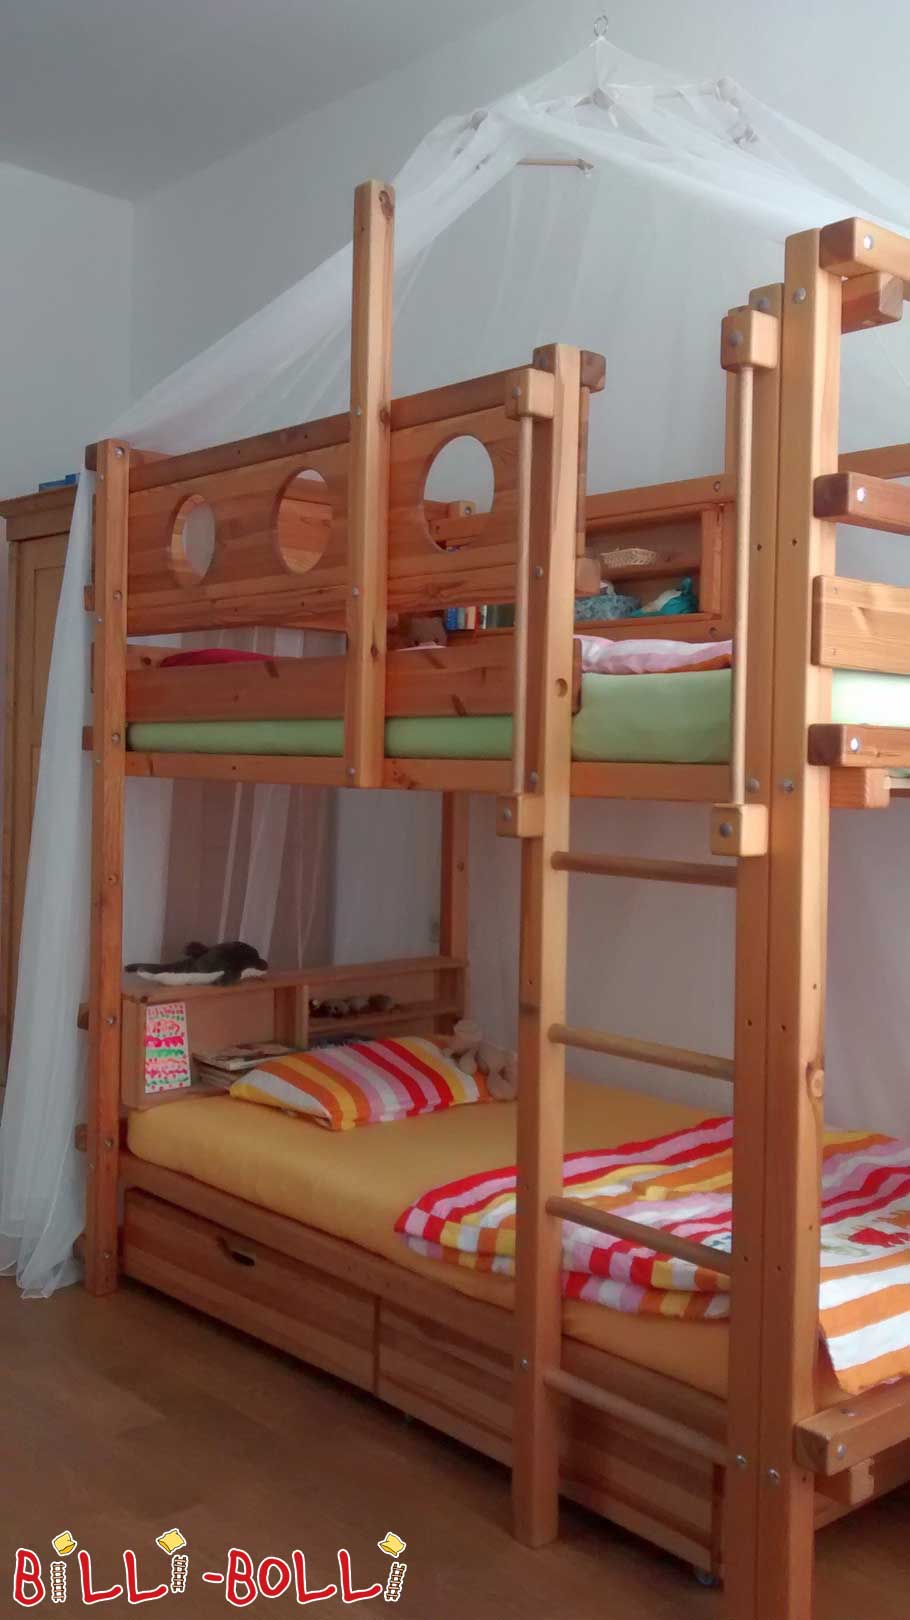 Dodatna raven spanja za podstrešno posteljo, ki raste z otrokom (Kategorija: Uporabljeno podstrešno ležišče)